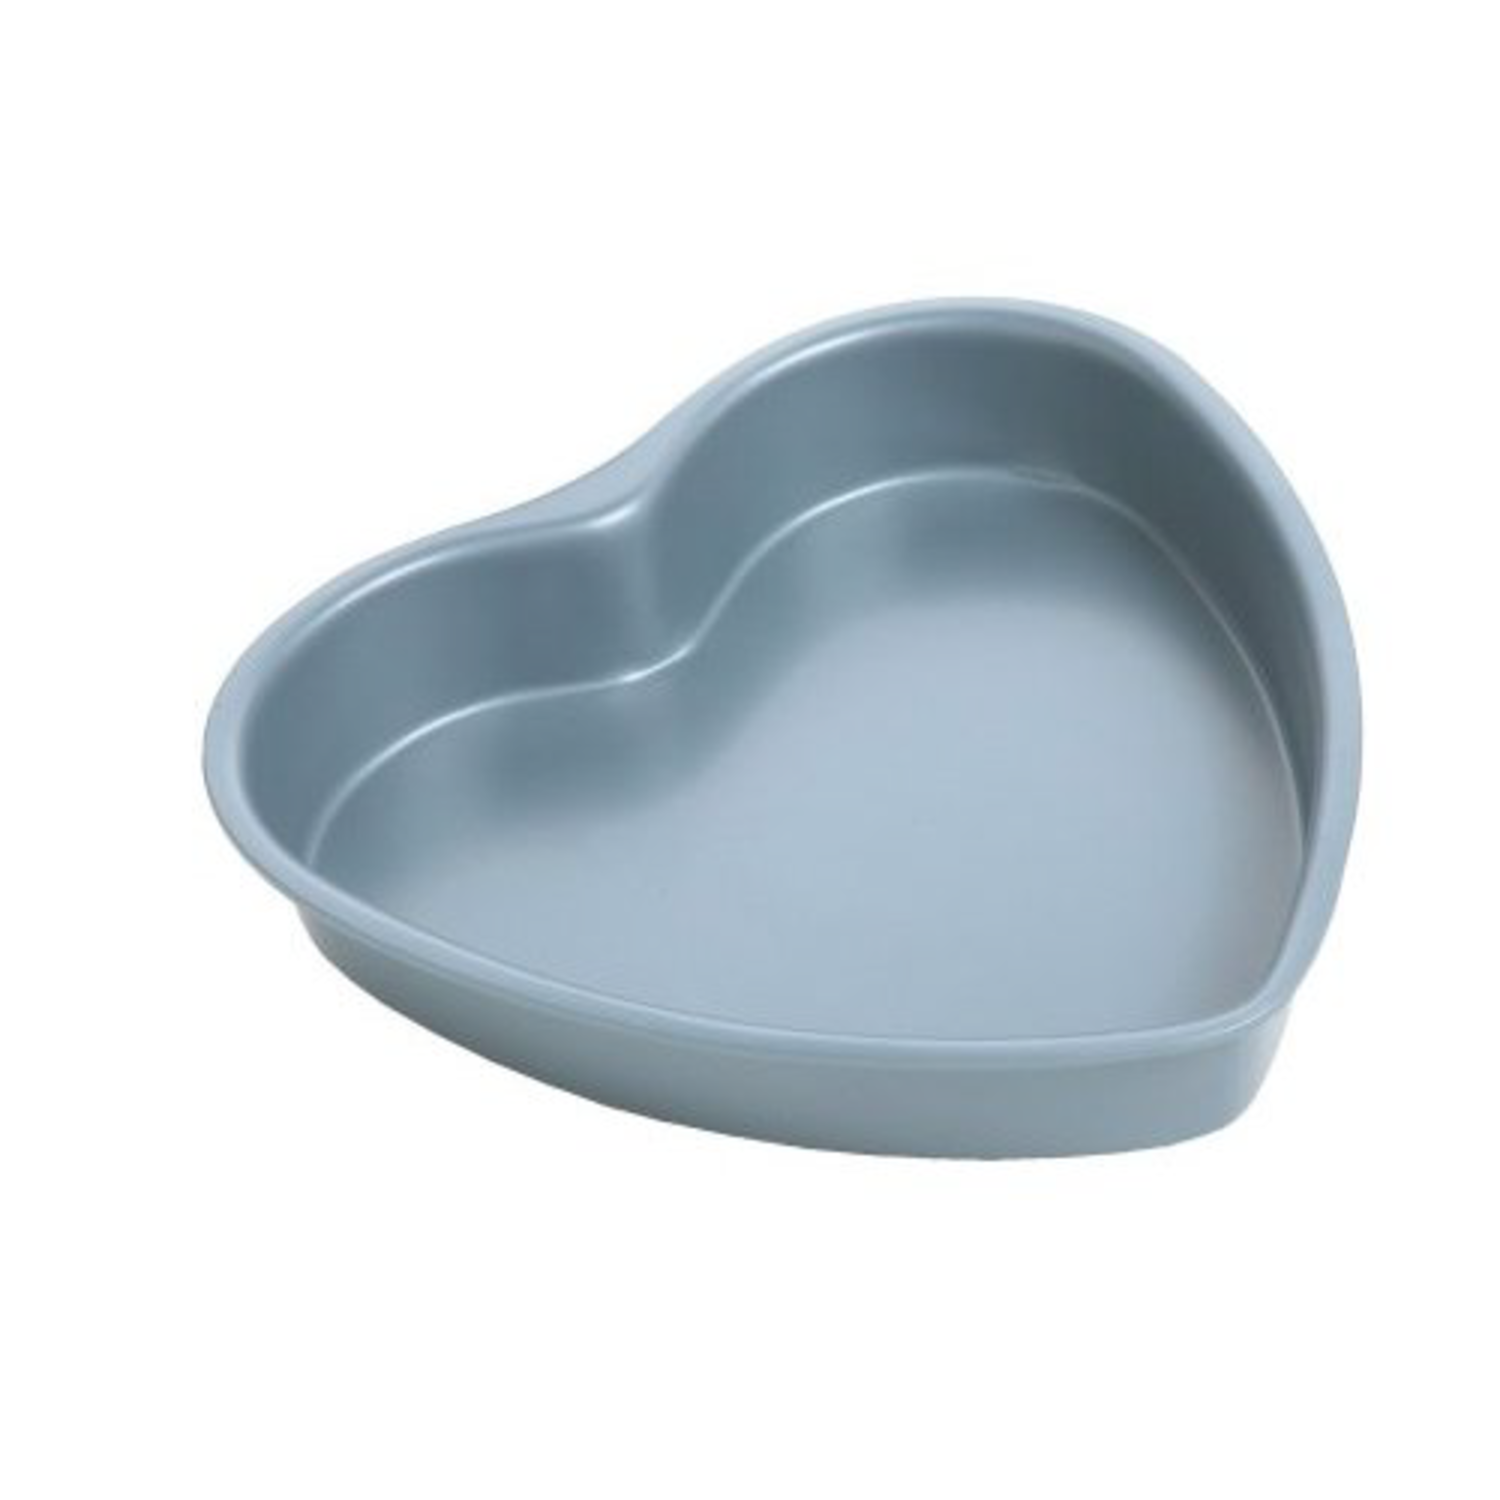 Ballerine/ Piscininha Baking Pan Heart shaped | Baking Supplies